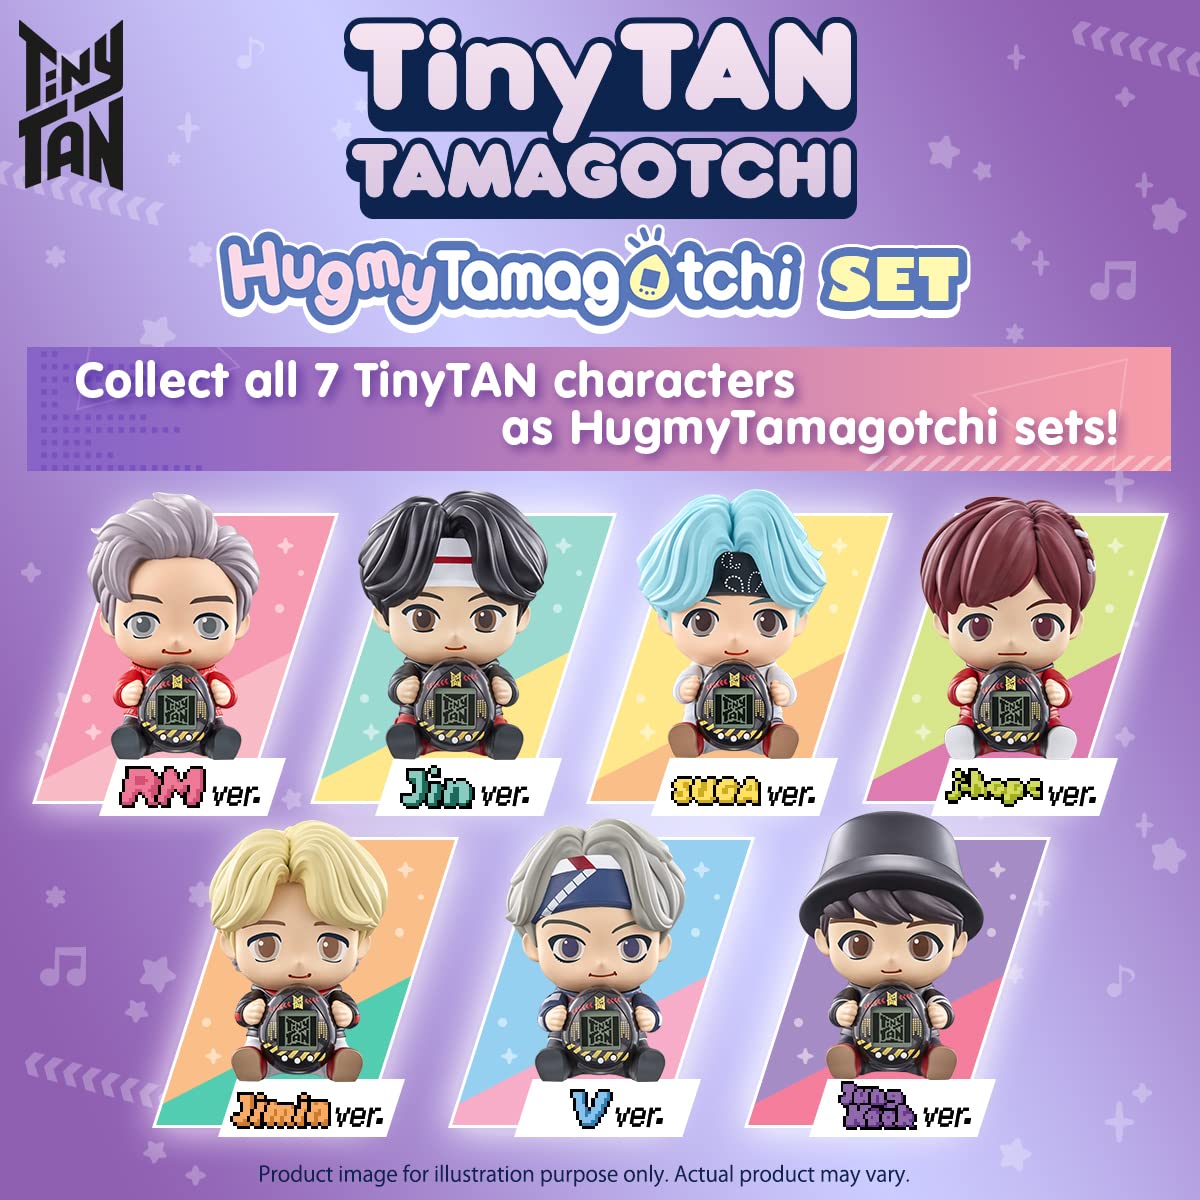 Tamagotchi Nano x BTS TinyTAN Hugmy Tamagotchi Jimin ver. Vinyl Figure (88871)